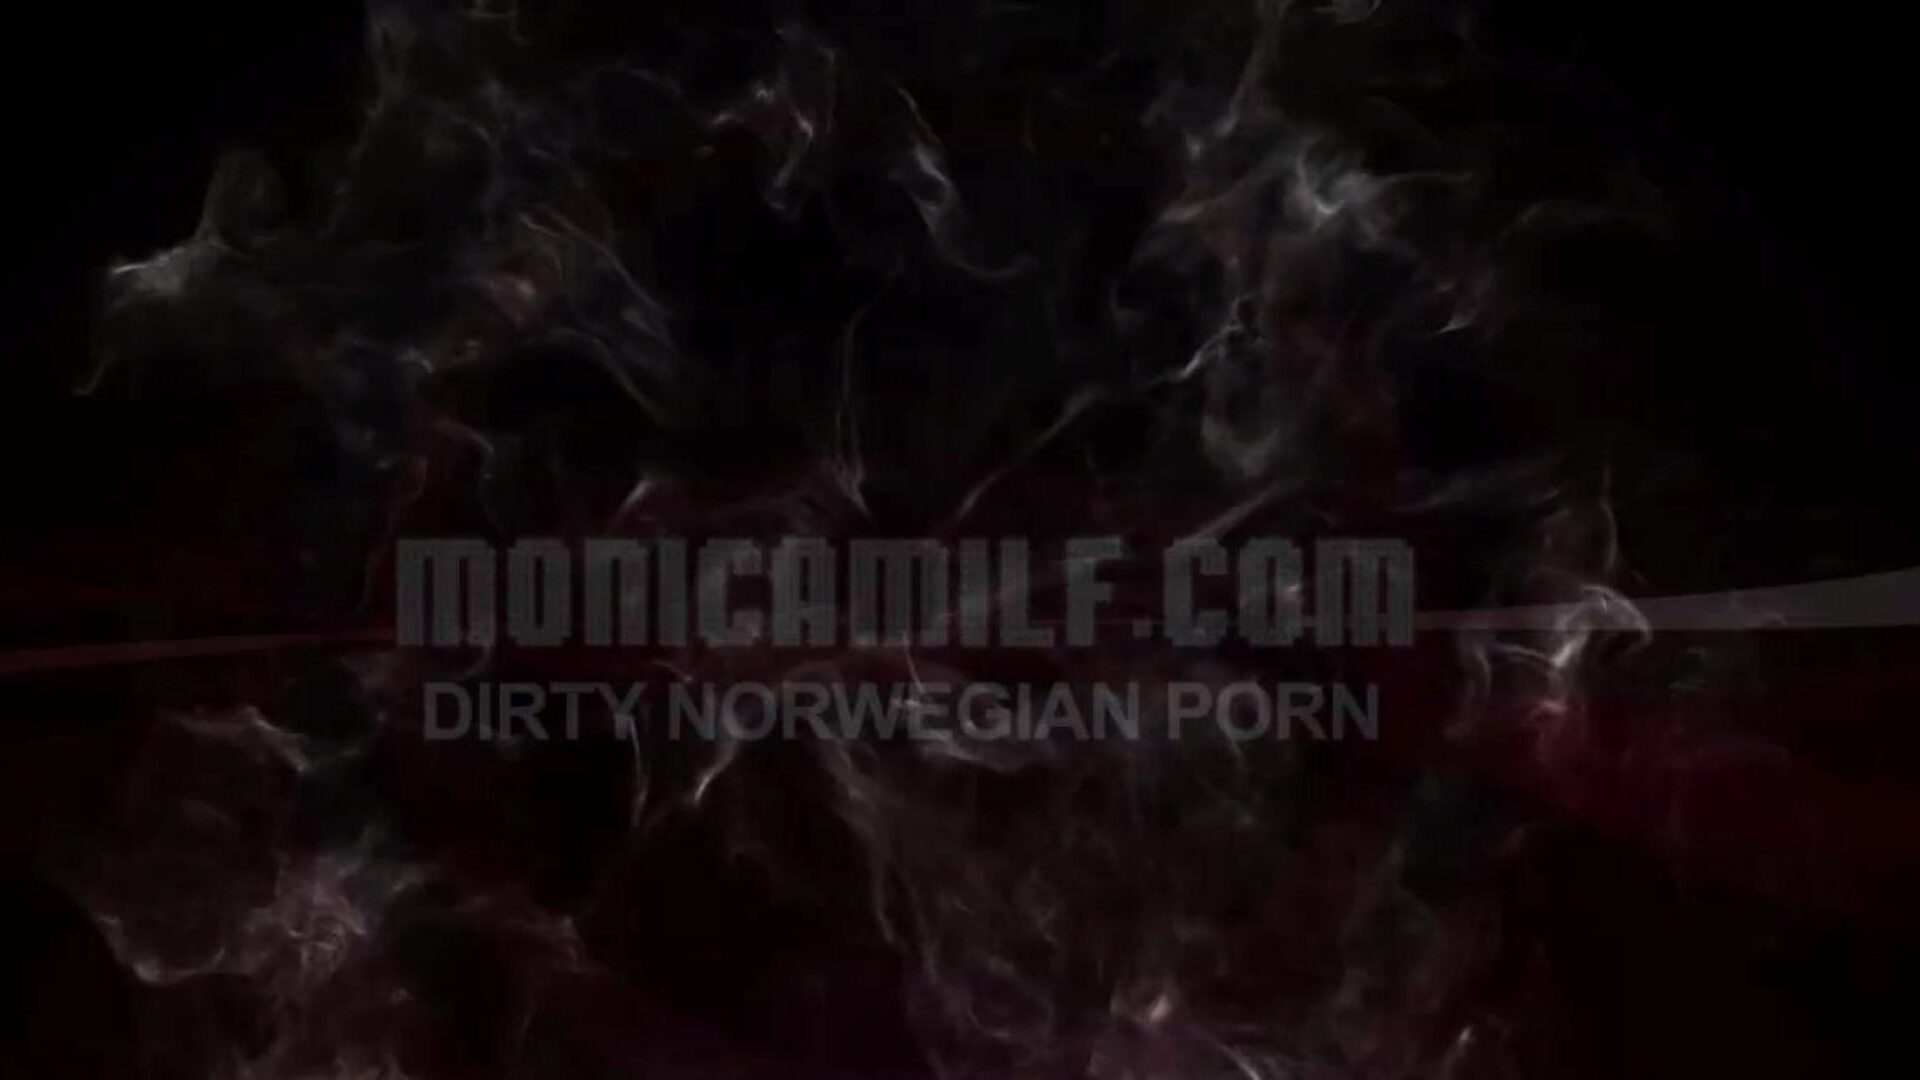 Monicamilf is squiring on her female dom villein - Norwegian Kink